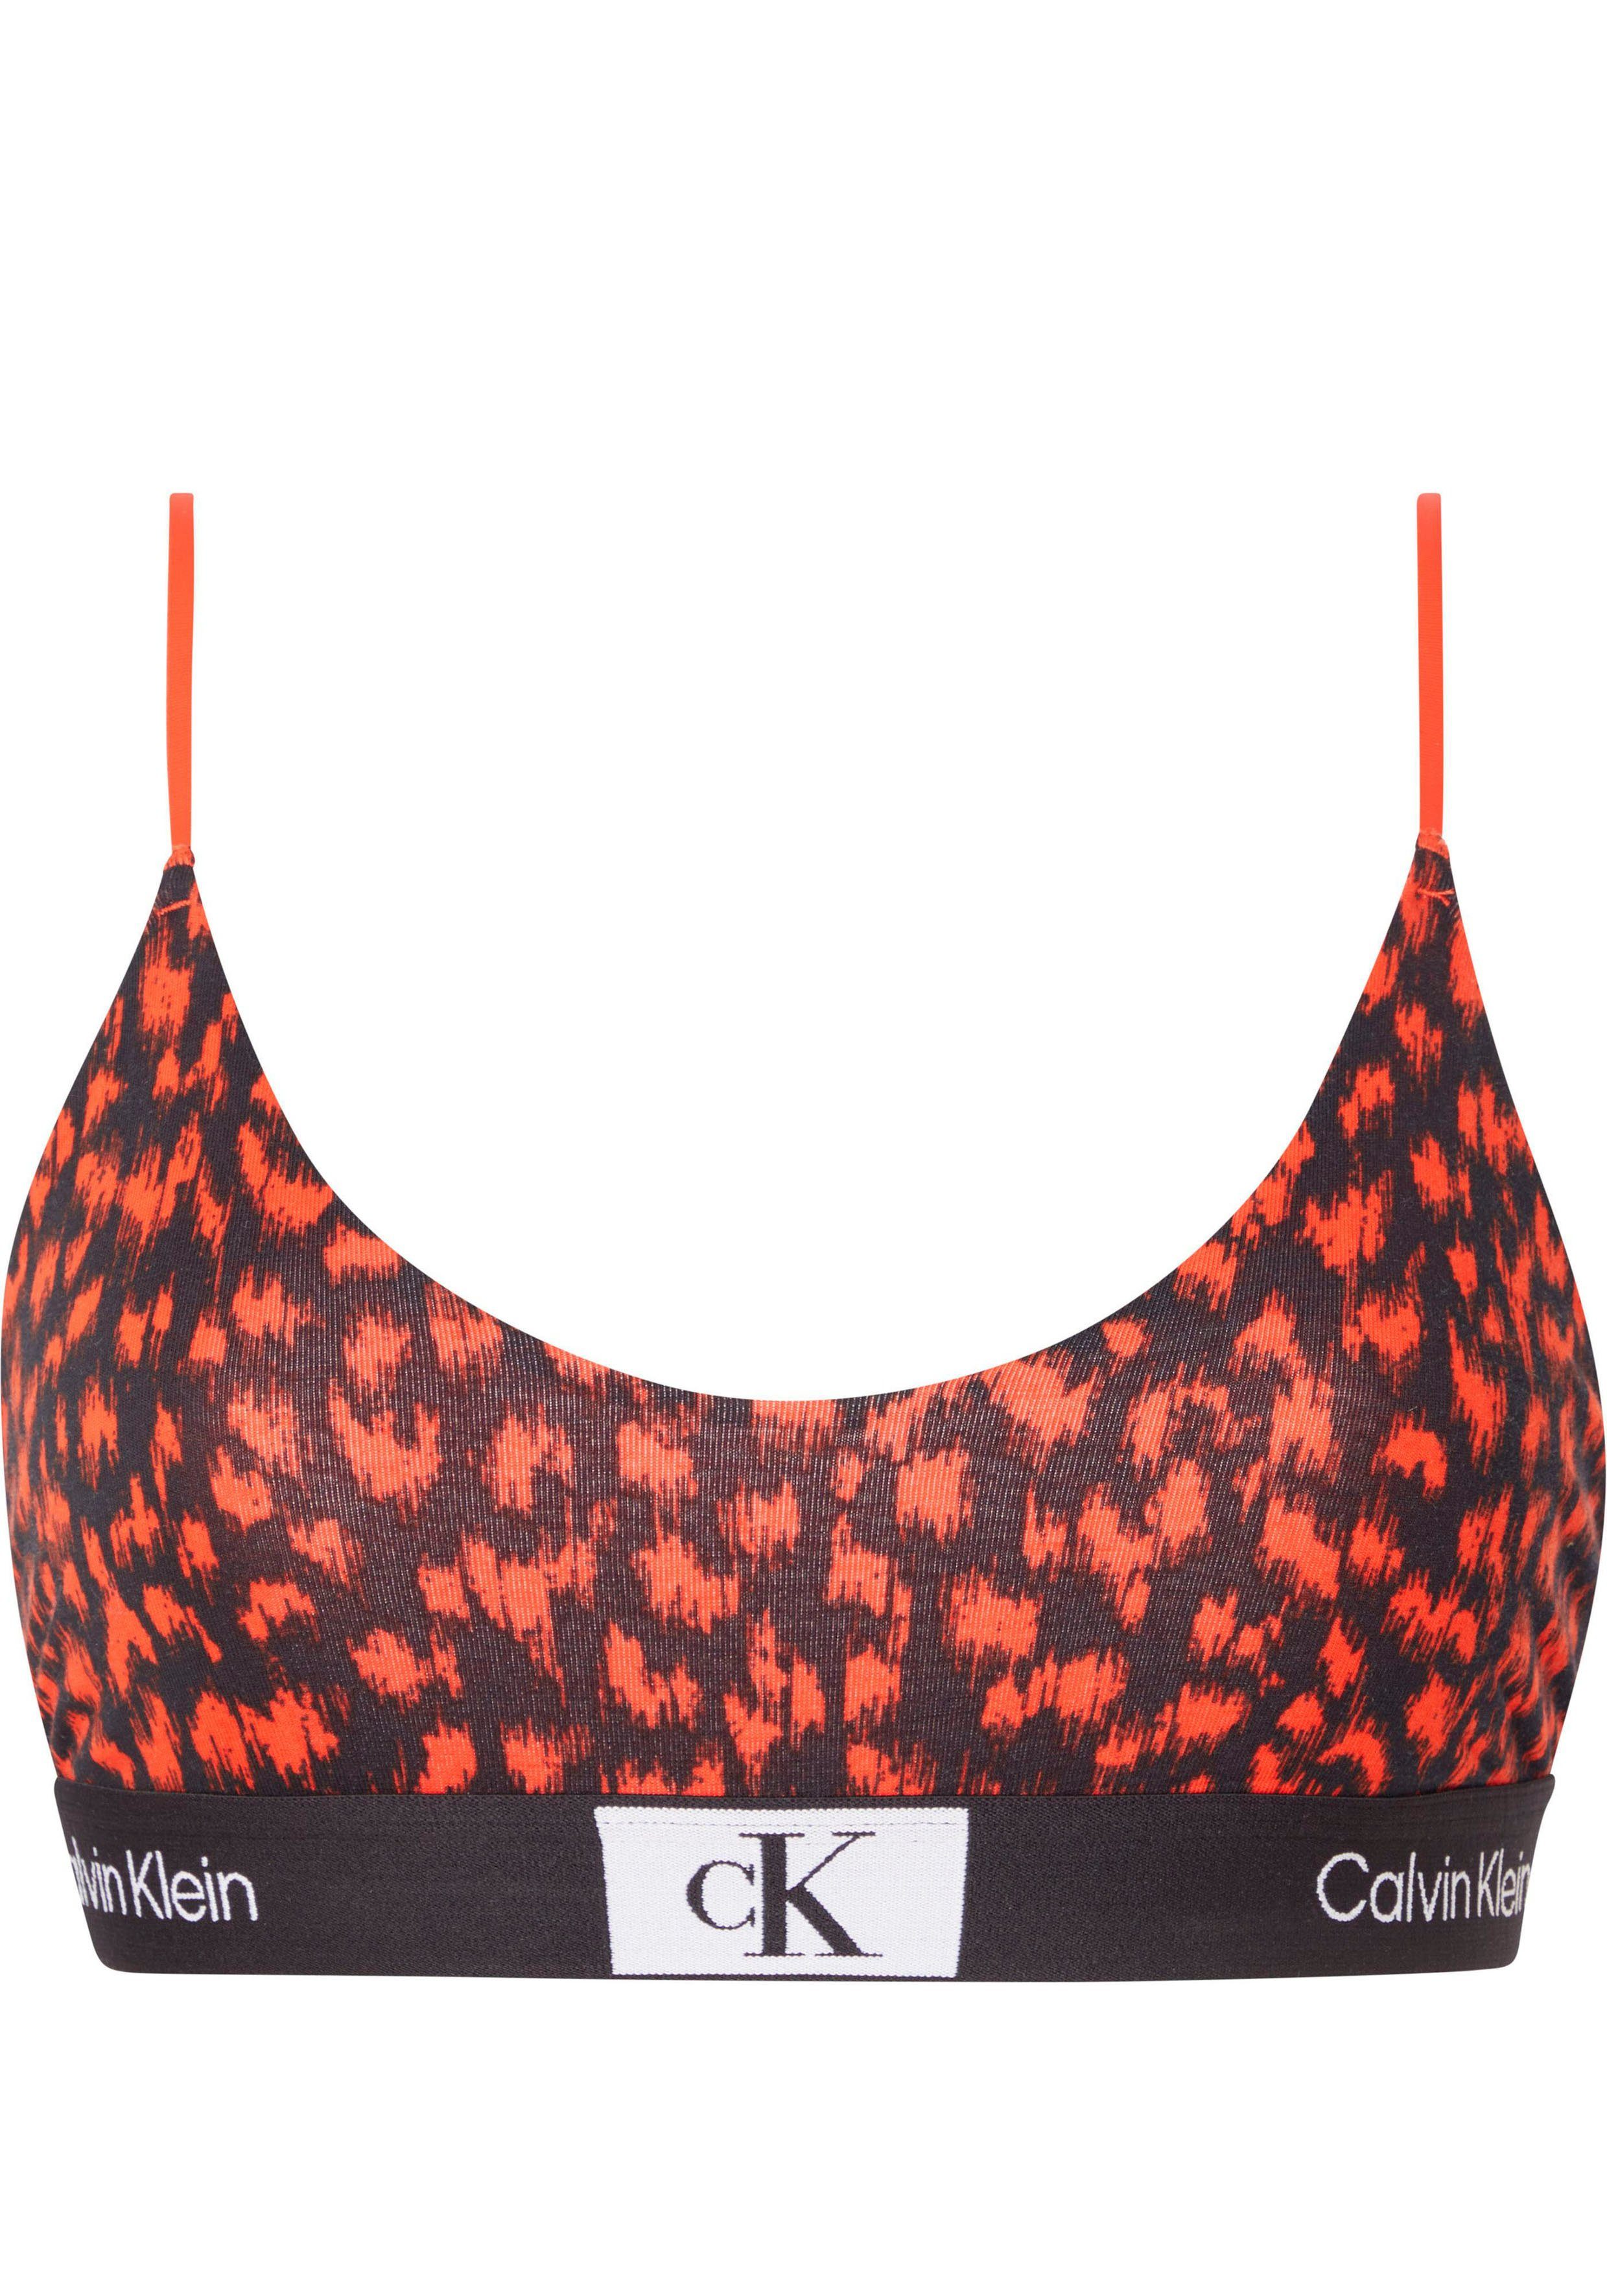 Calvin Klein Underwear Bralette-BH UNLINED BRALETTE mit klassischem CK-Logobund